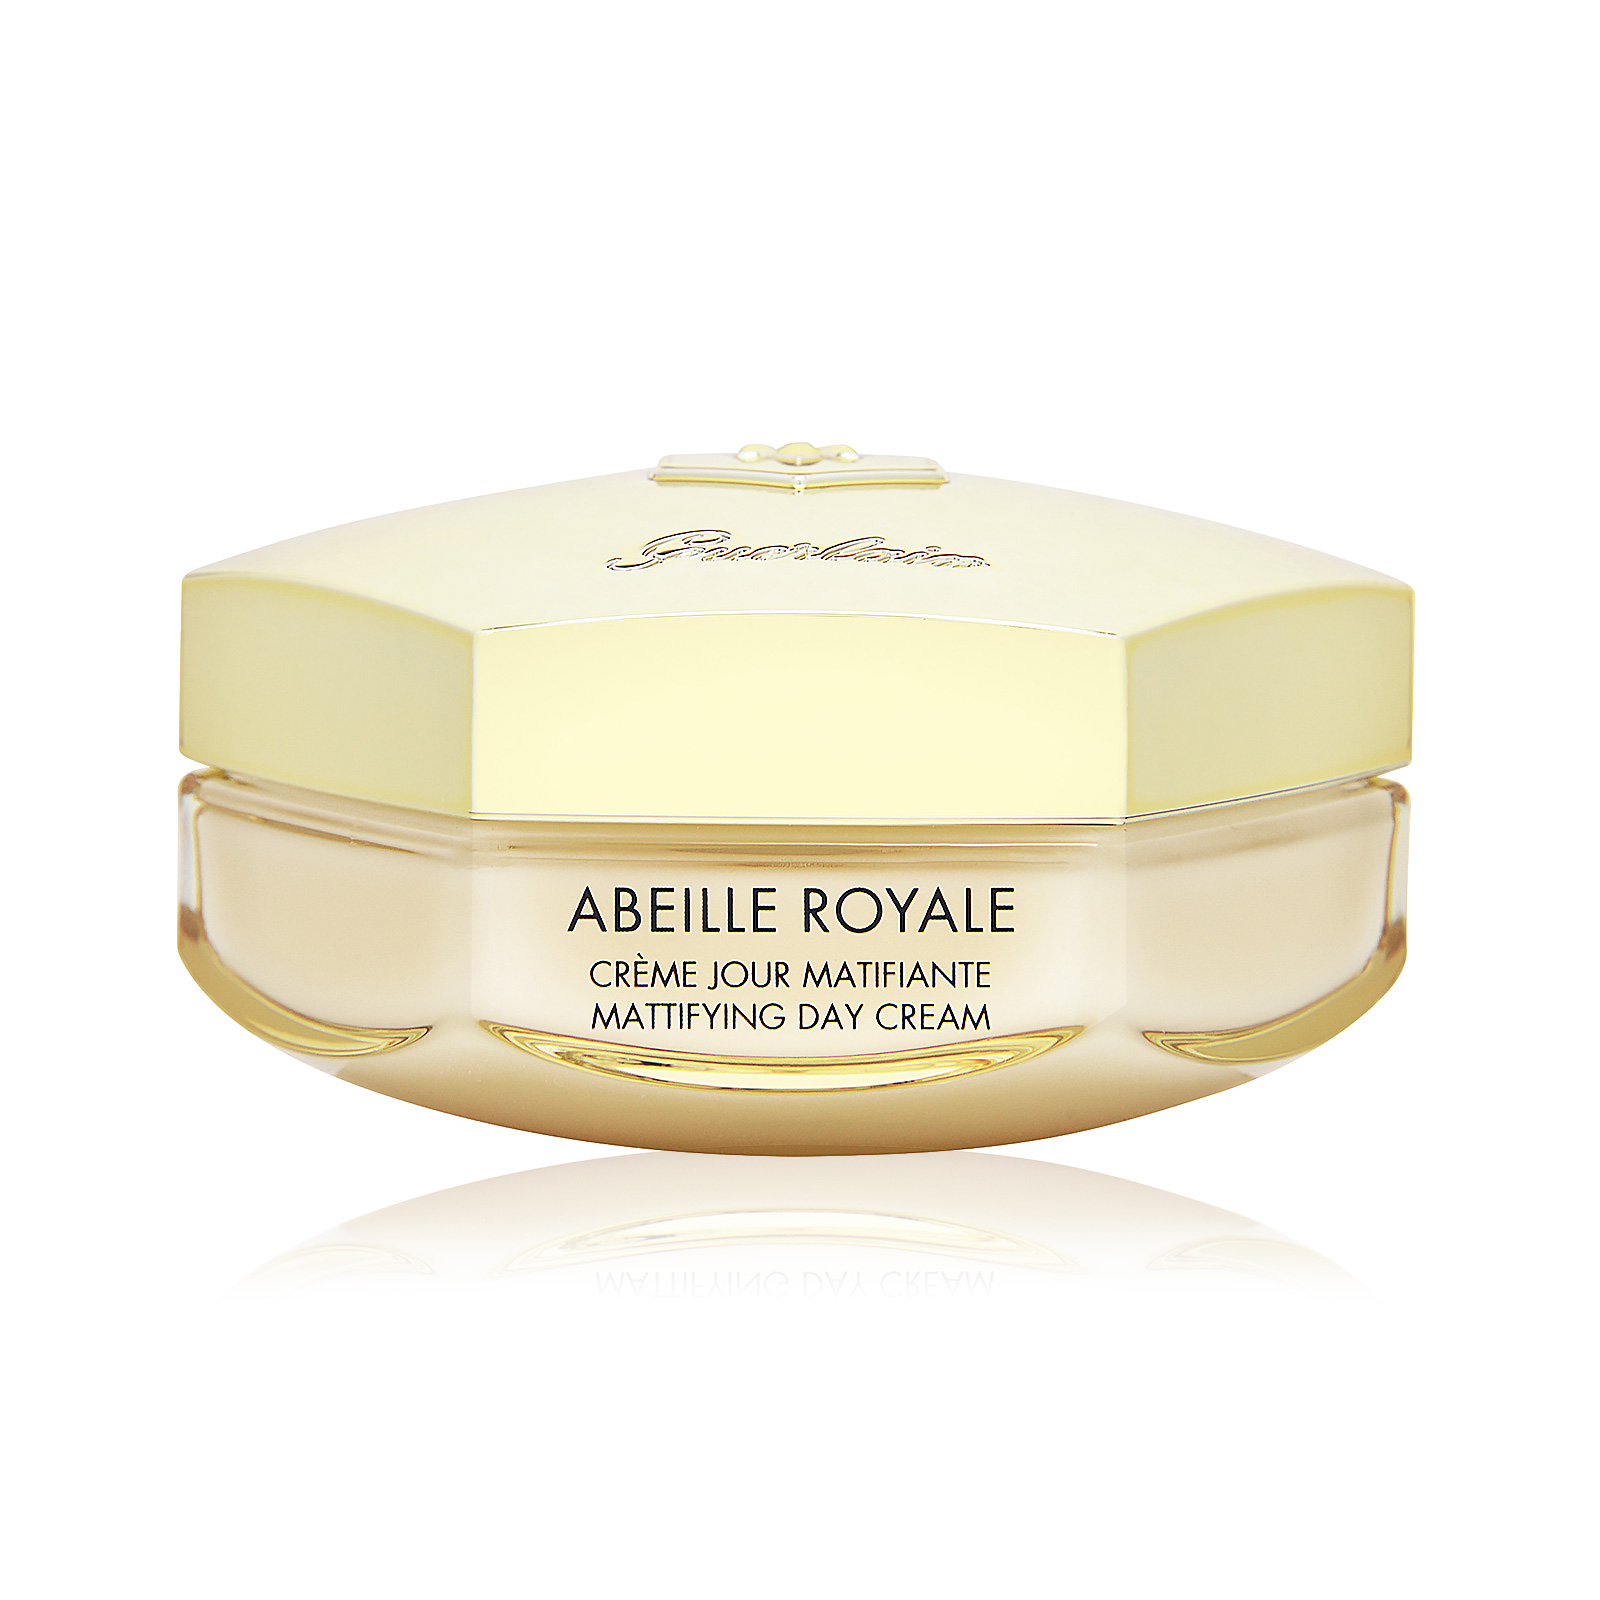 Abeille Royale Mattifying Day Cream